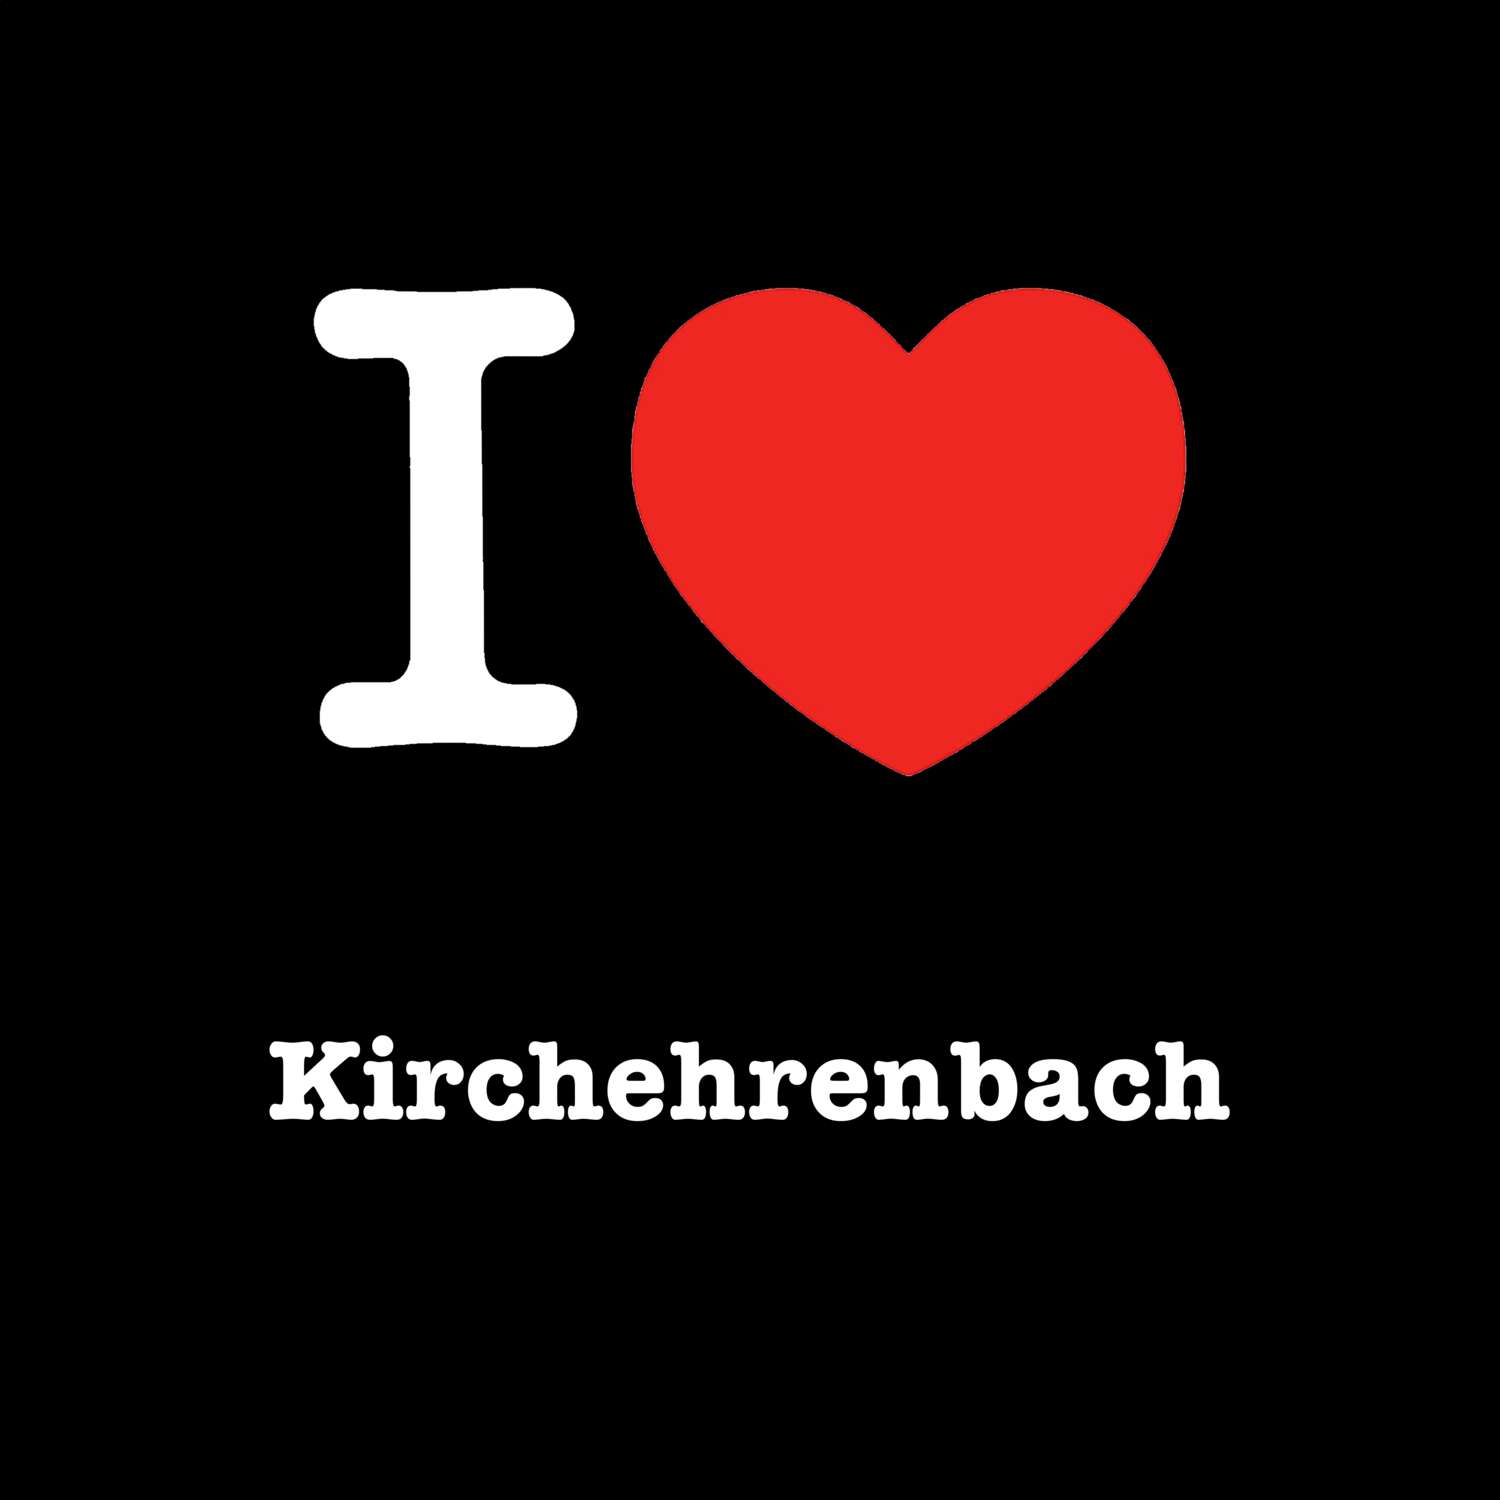 Kirchehrenbach T-Shirt »I love«